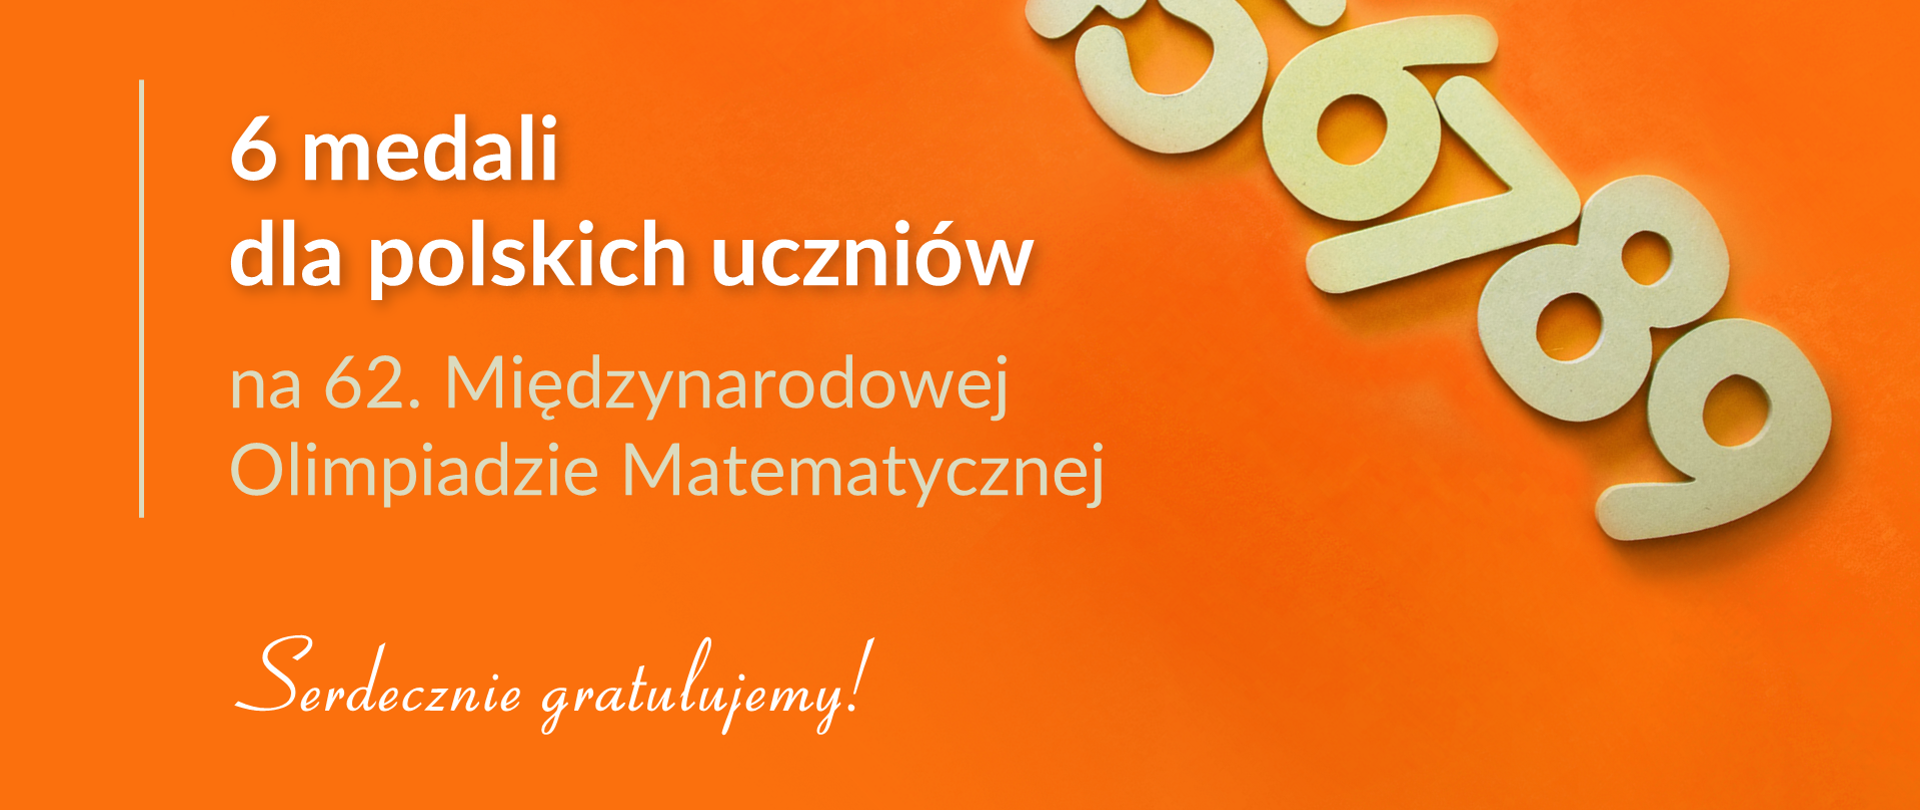 Grafika z tekstem: "6 medali dla polskich uczniów na 62. Międzynarodowej Olimpiadzie Matematycznej. Serdecznie gratulujemy!"